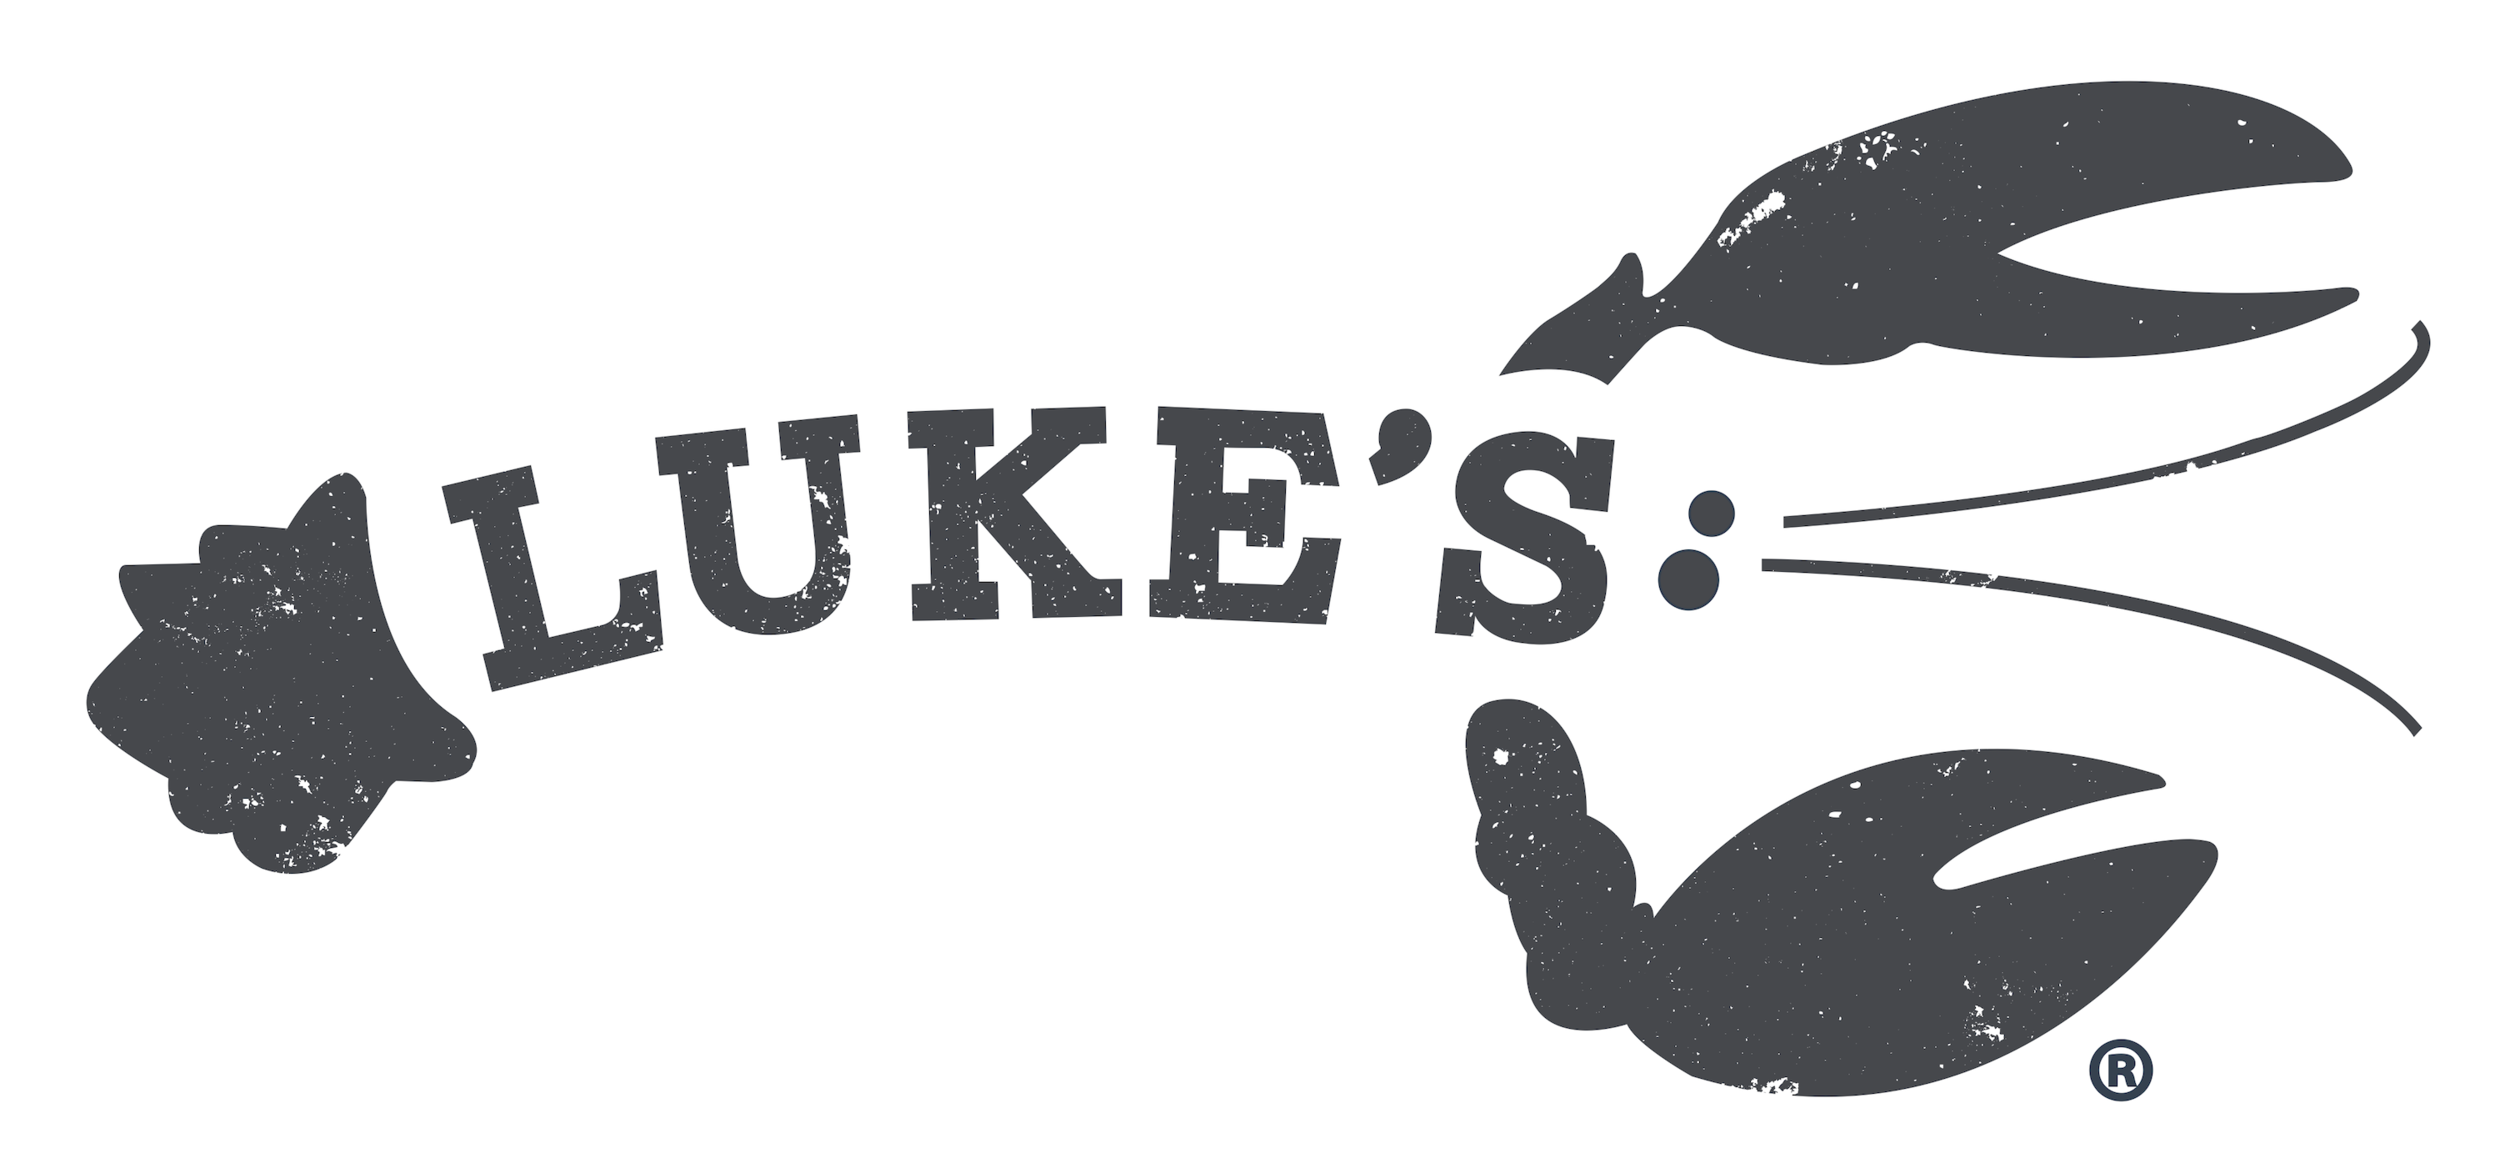 Luke’s Lobster logo